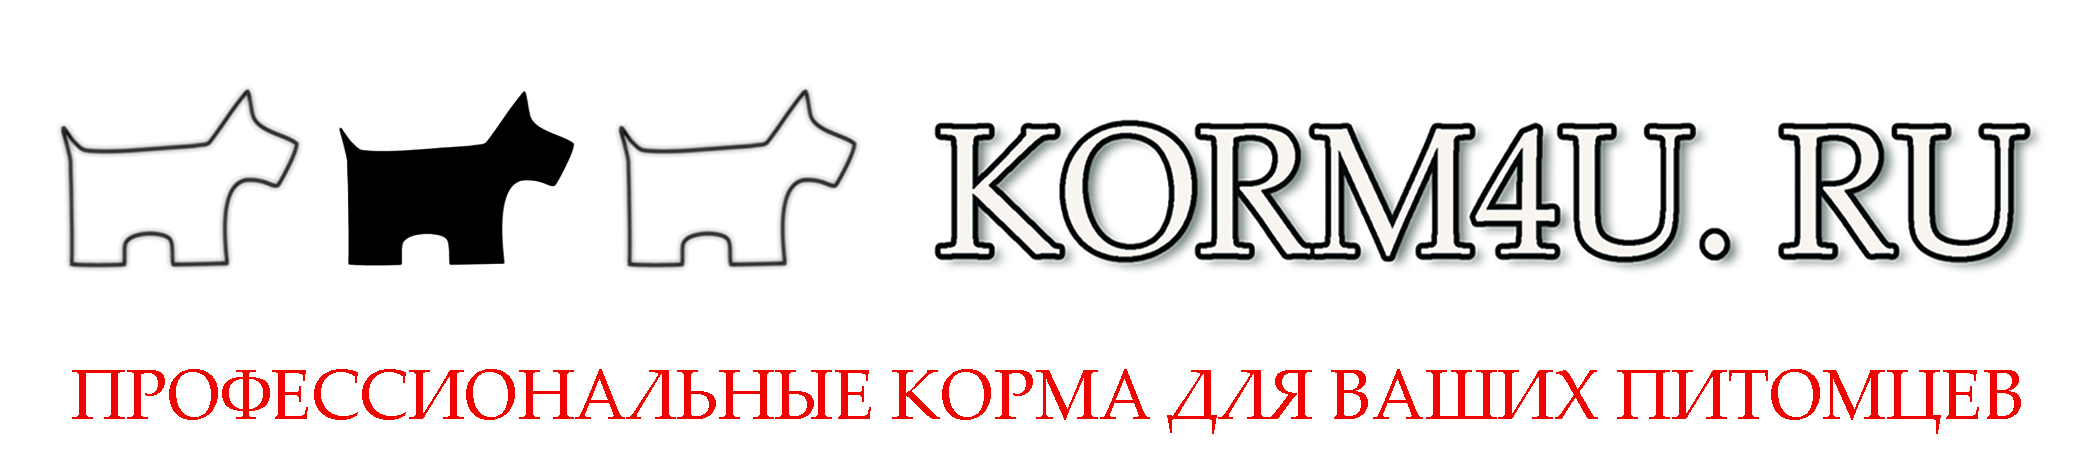 Интернет-магазин зоотоваров KORM4U